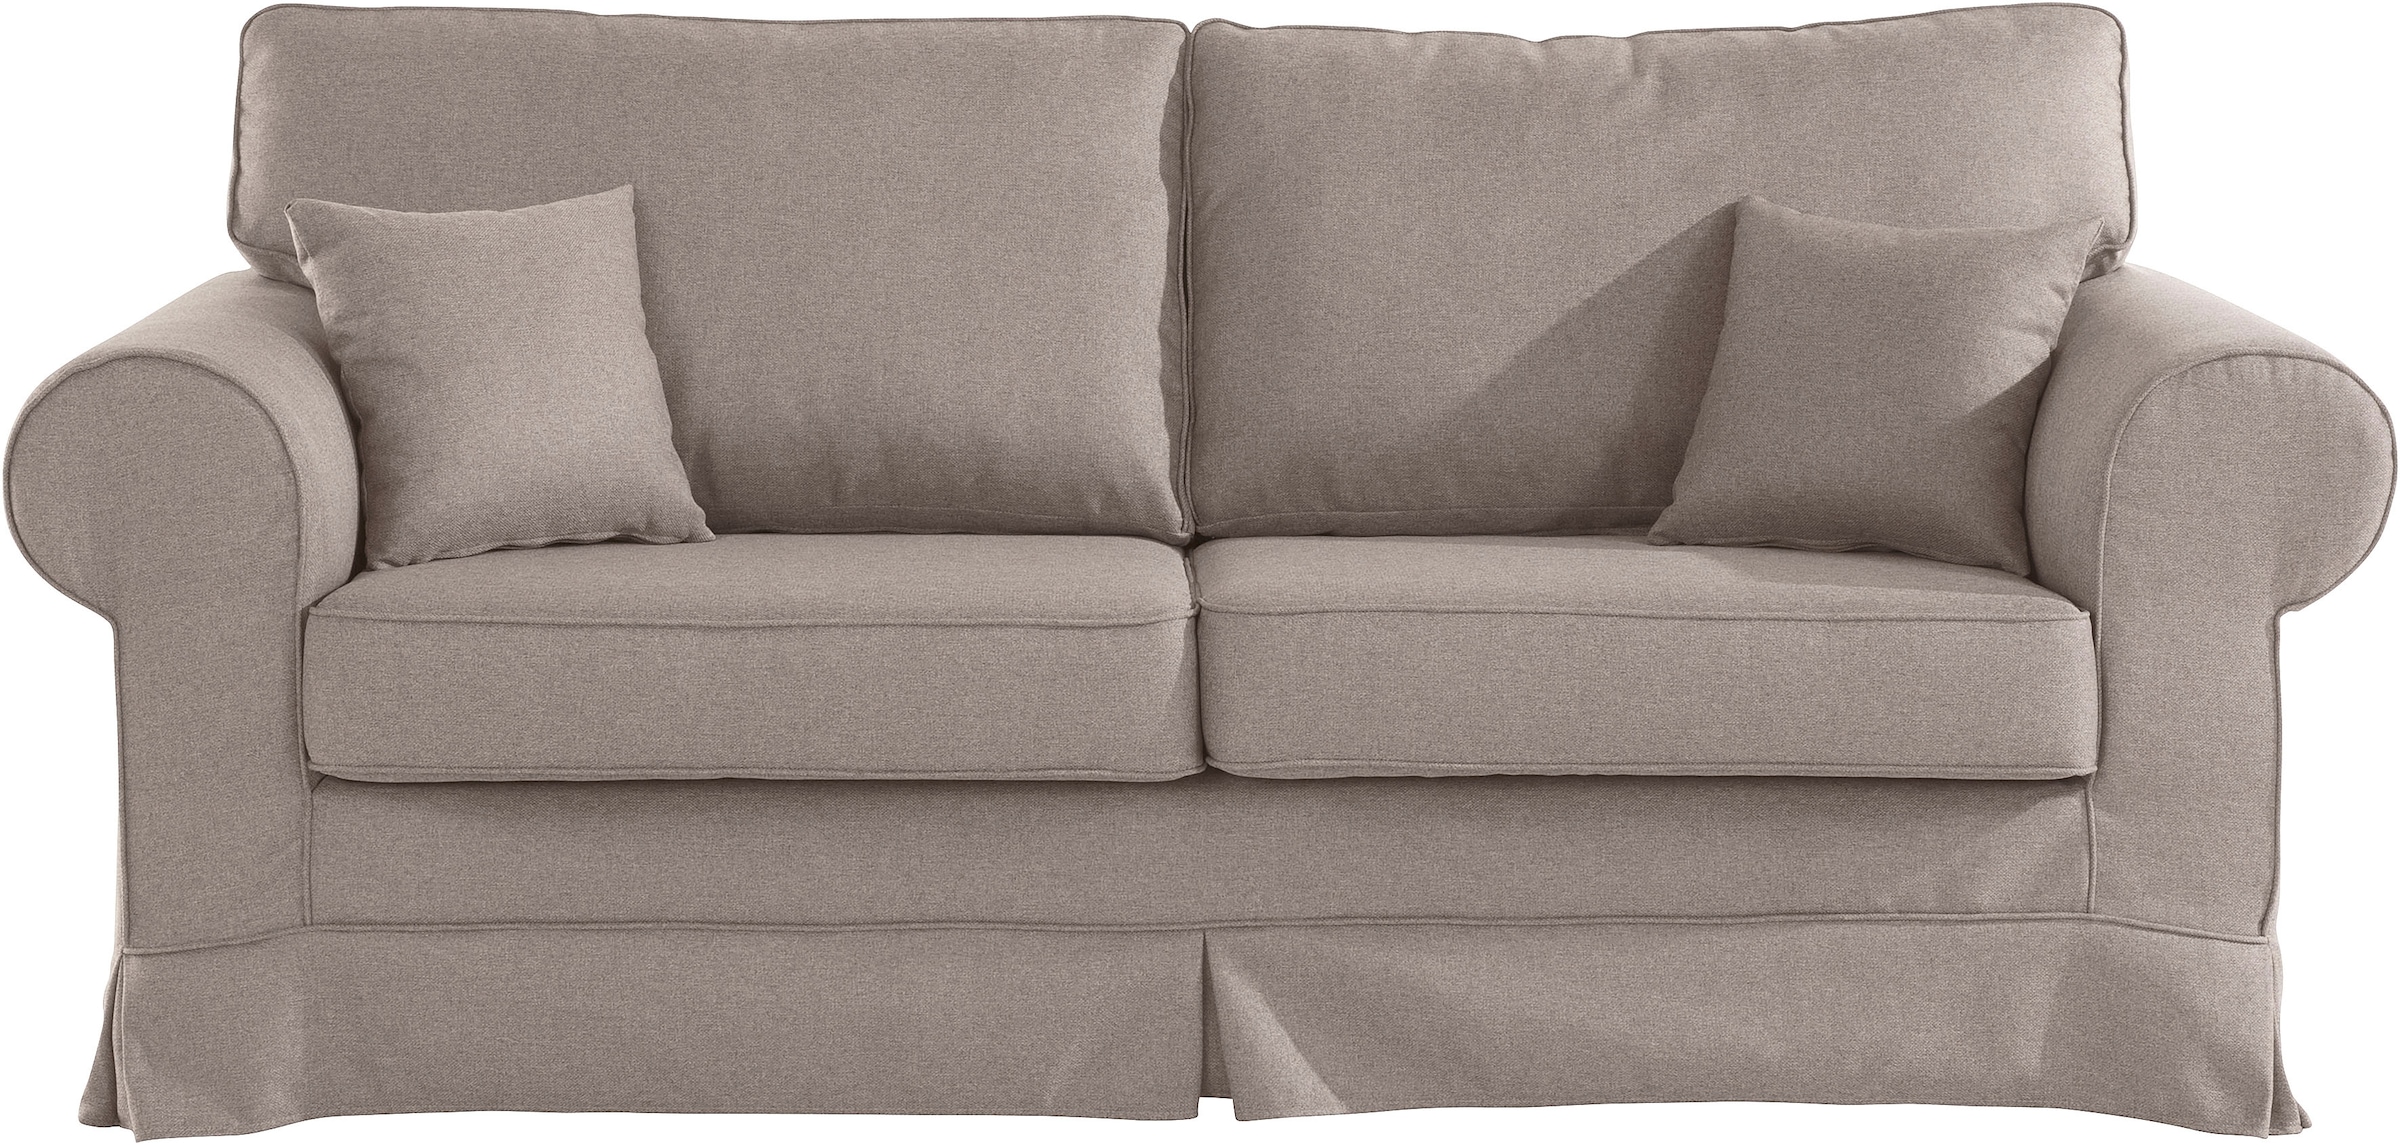 Trendige Stretch Couchbezug kaufen online